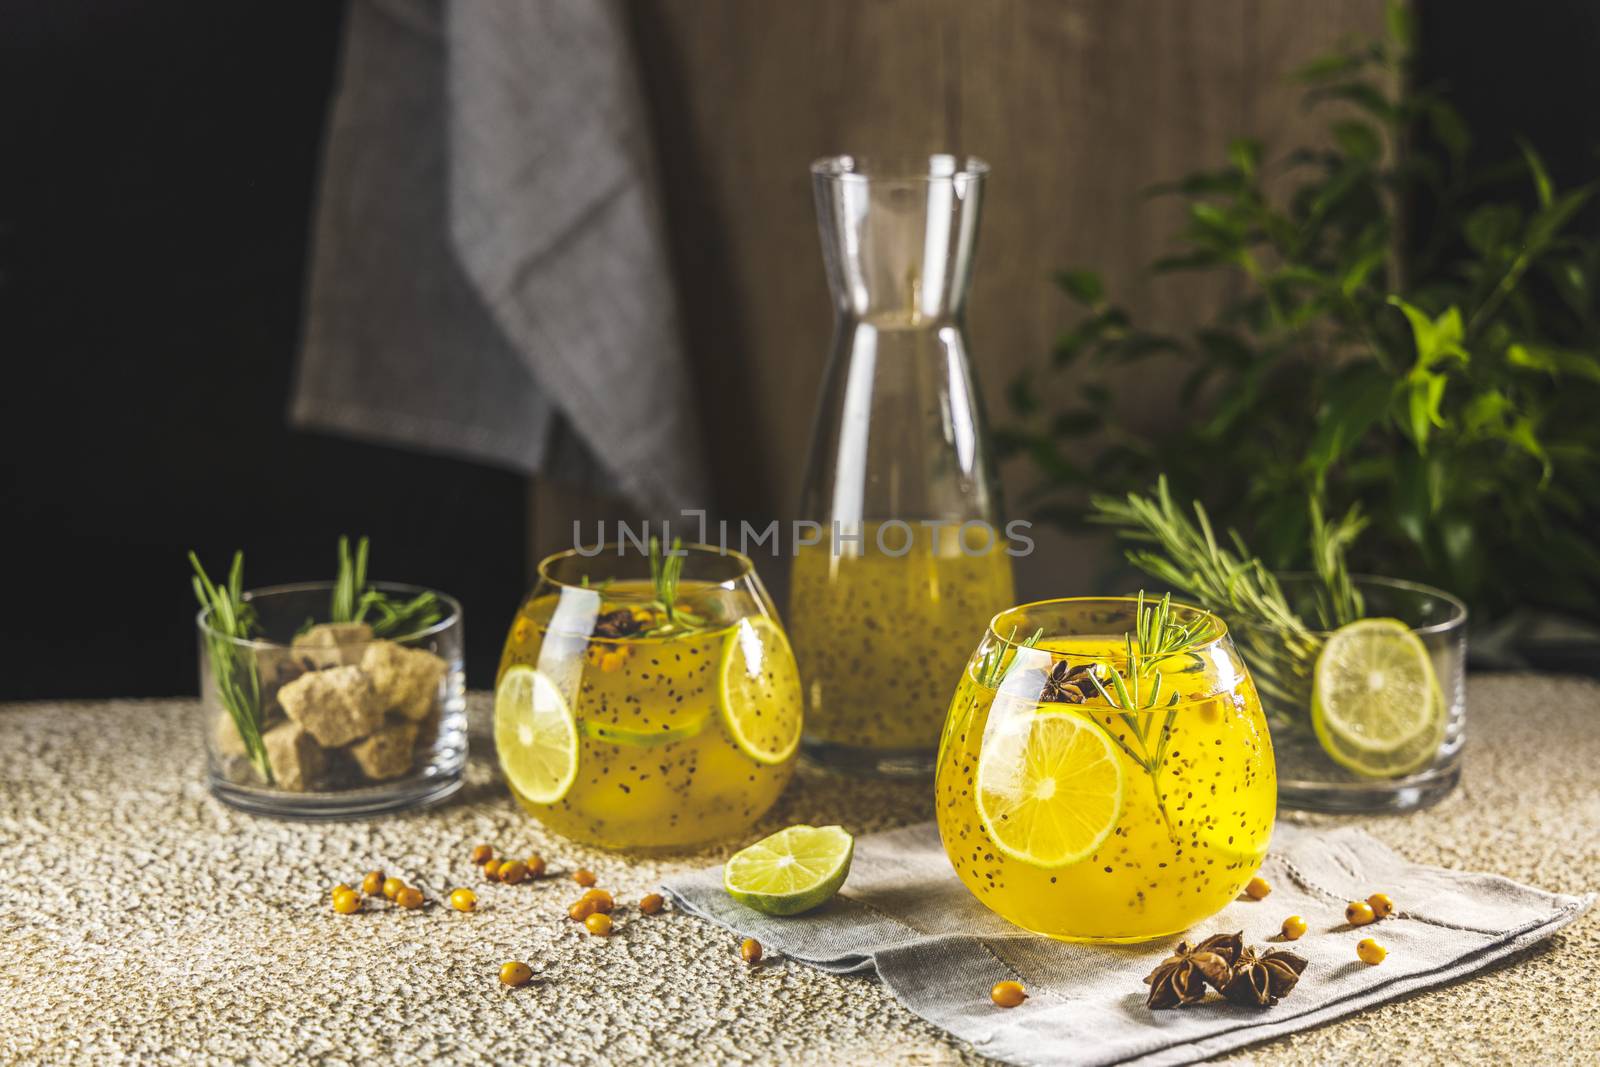 Sea buckthorn iced tea or lemonade with lime, rosemary, star ani by ArtSvitlyna